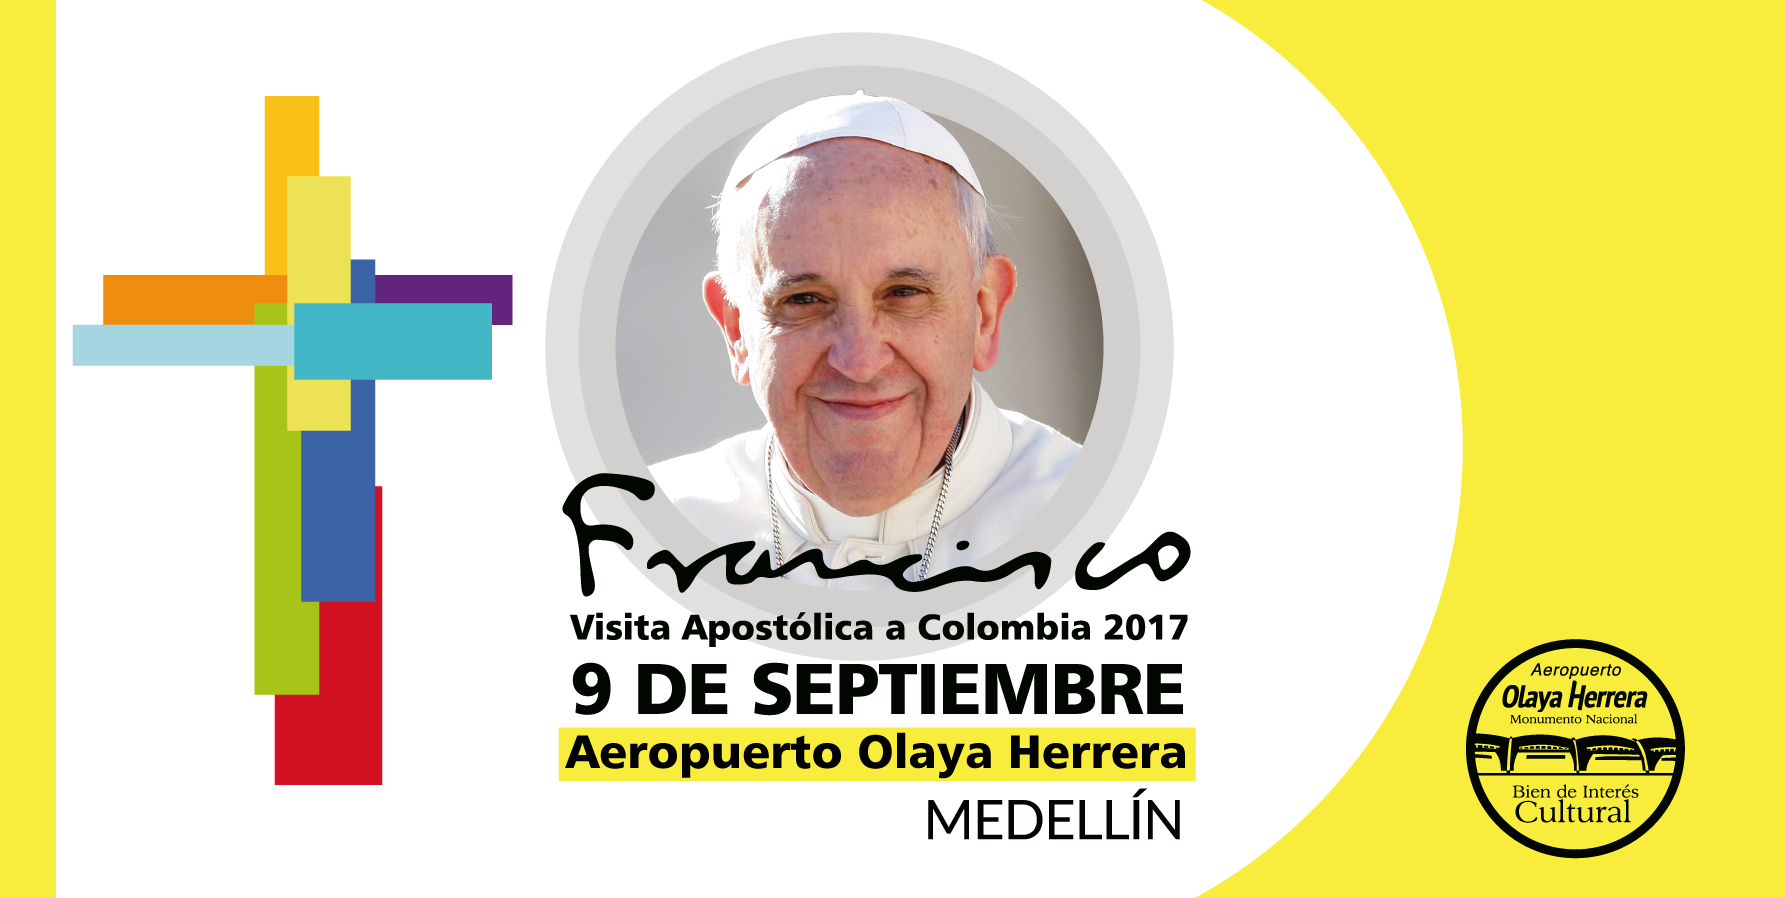 Medellín vivirá un encuentro de fe con el Papa Francisco